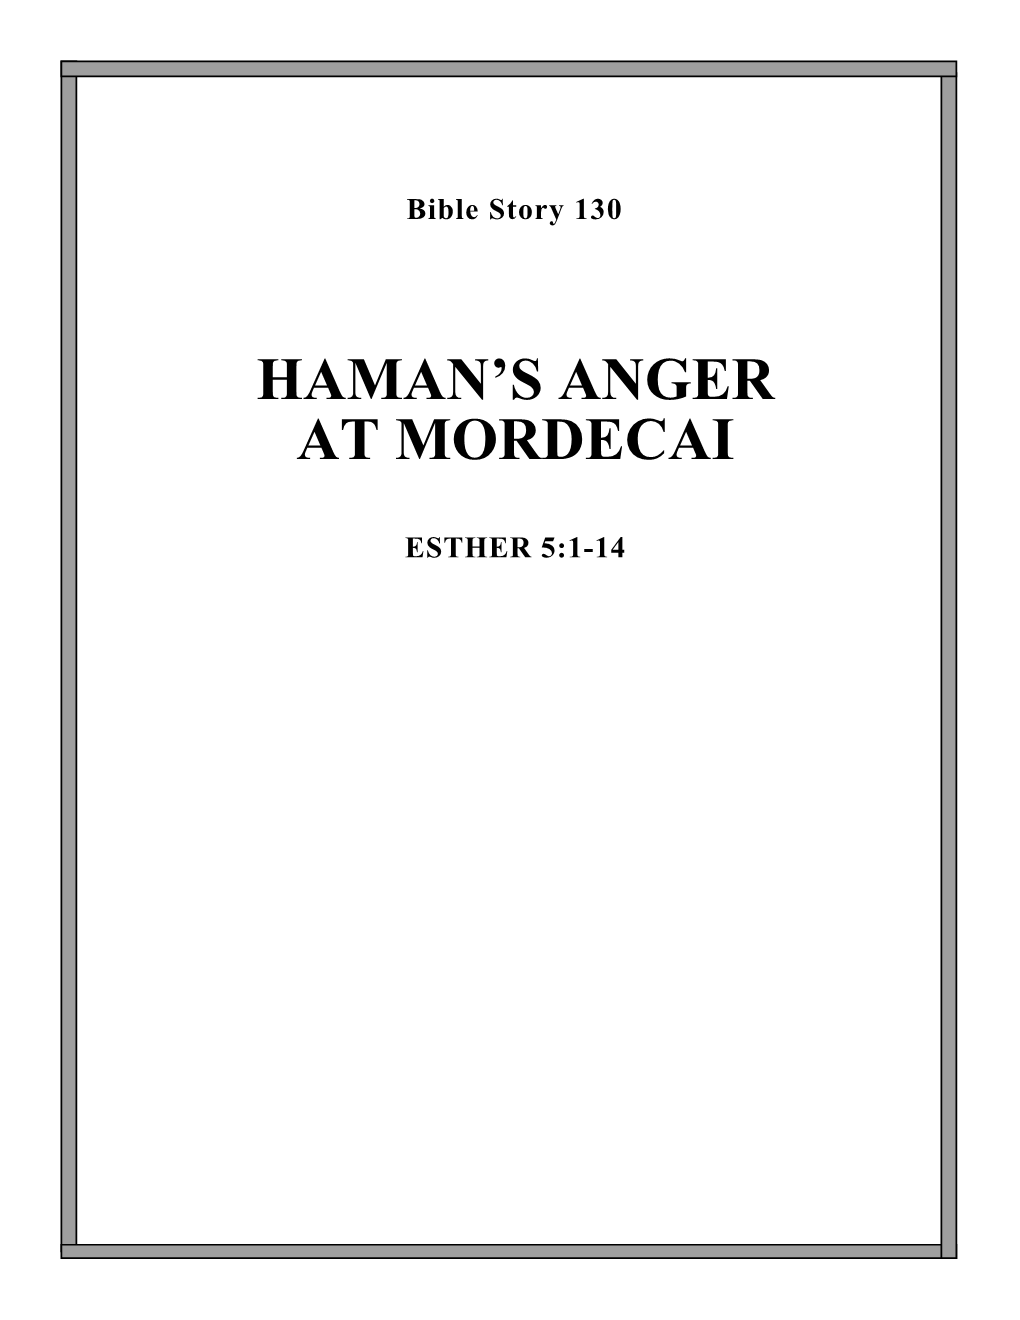 Haman's Anger at Mordecai